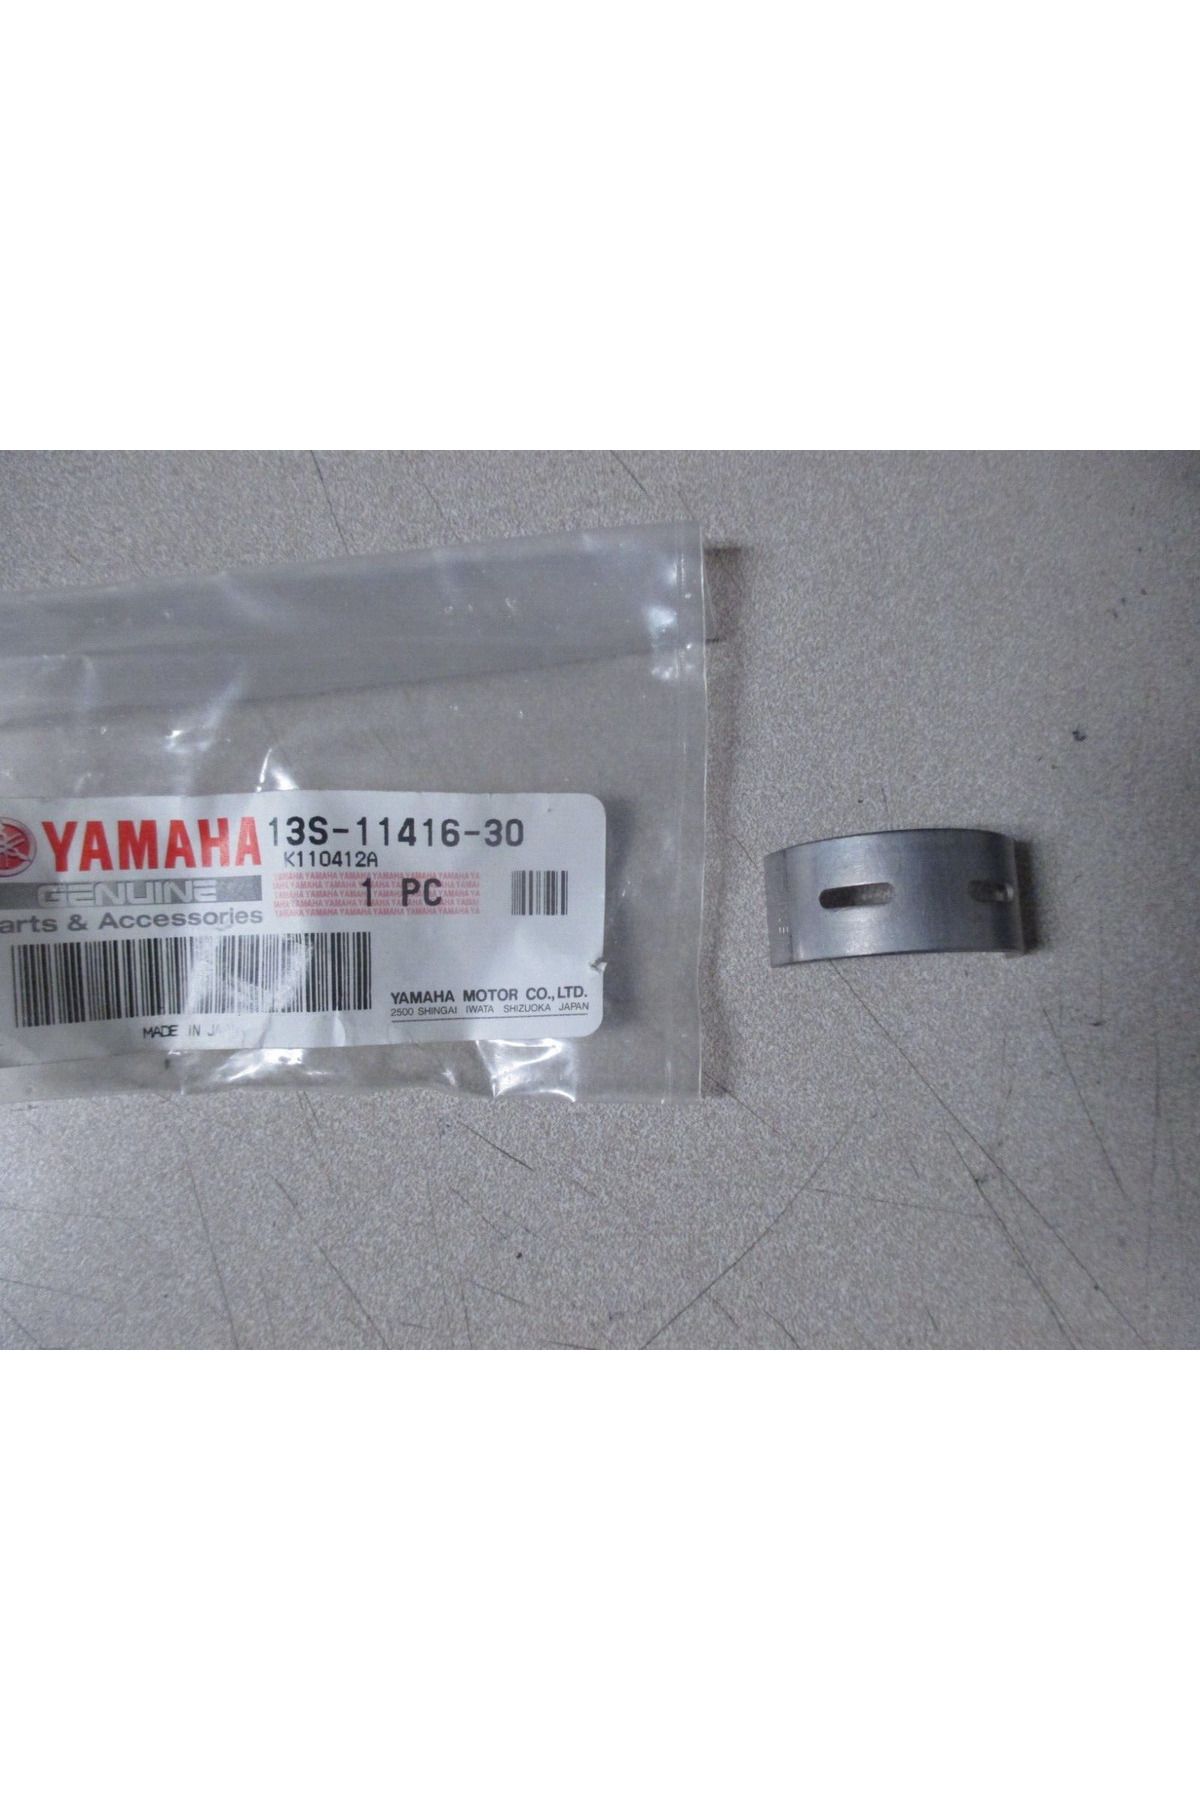 Yamaha R6 ANA YATAK YEŞİL ADET FİYATIDIR 13S-11416-30